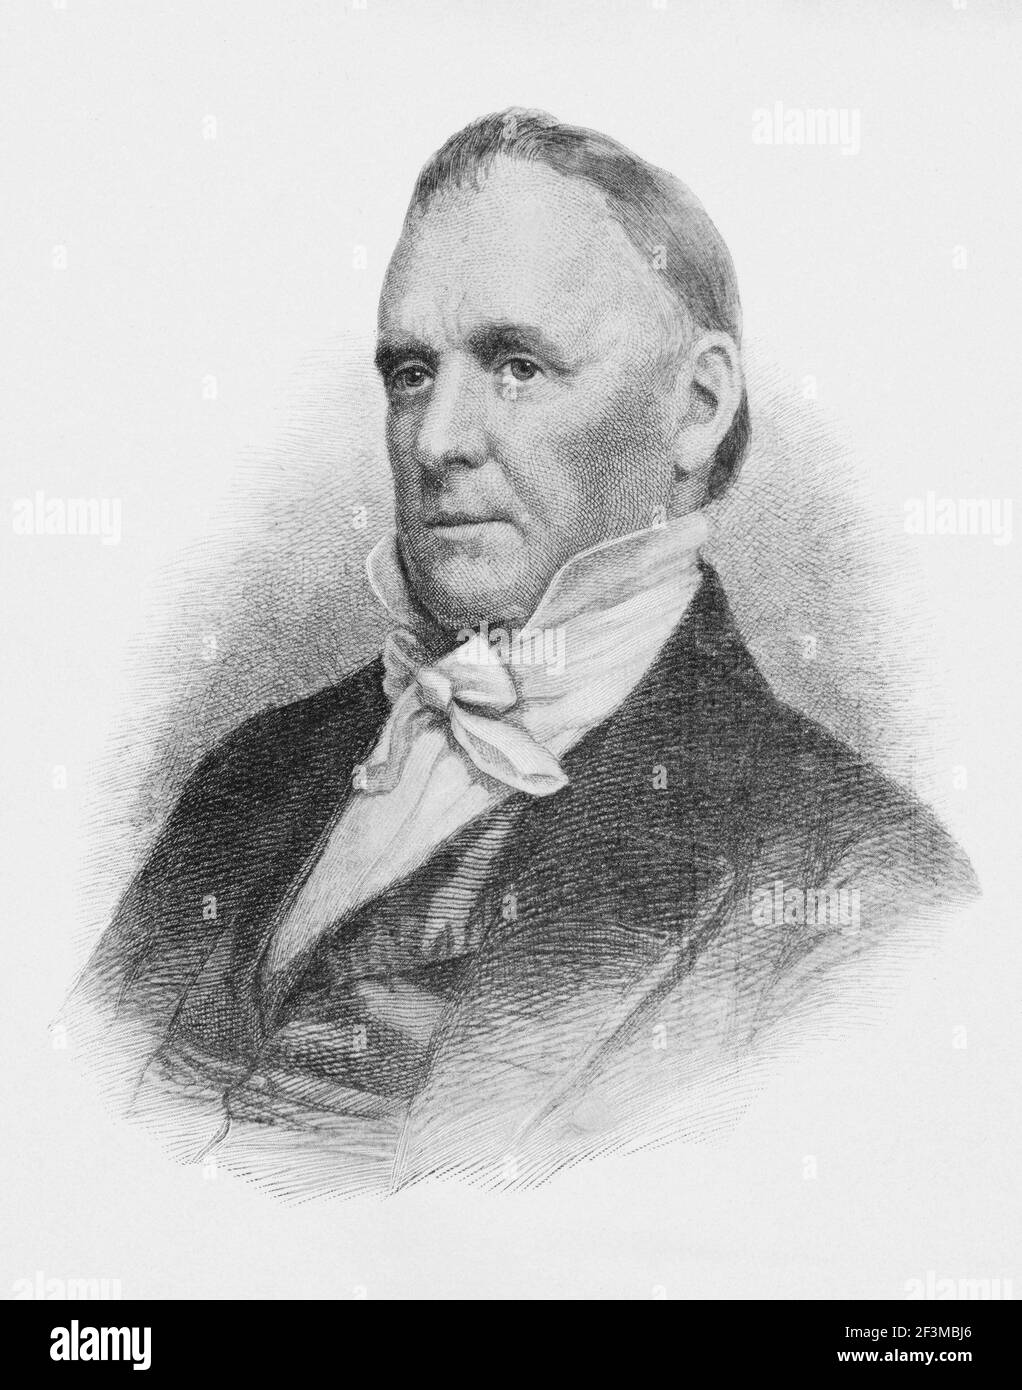 Portrait du président James Buchanan Jr. James Buchanan Jr. (1791 – 1868) était un avocat et homme politique américain qui a servi comme le 15e président de la TH Banque D'Images